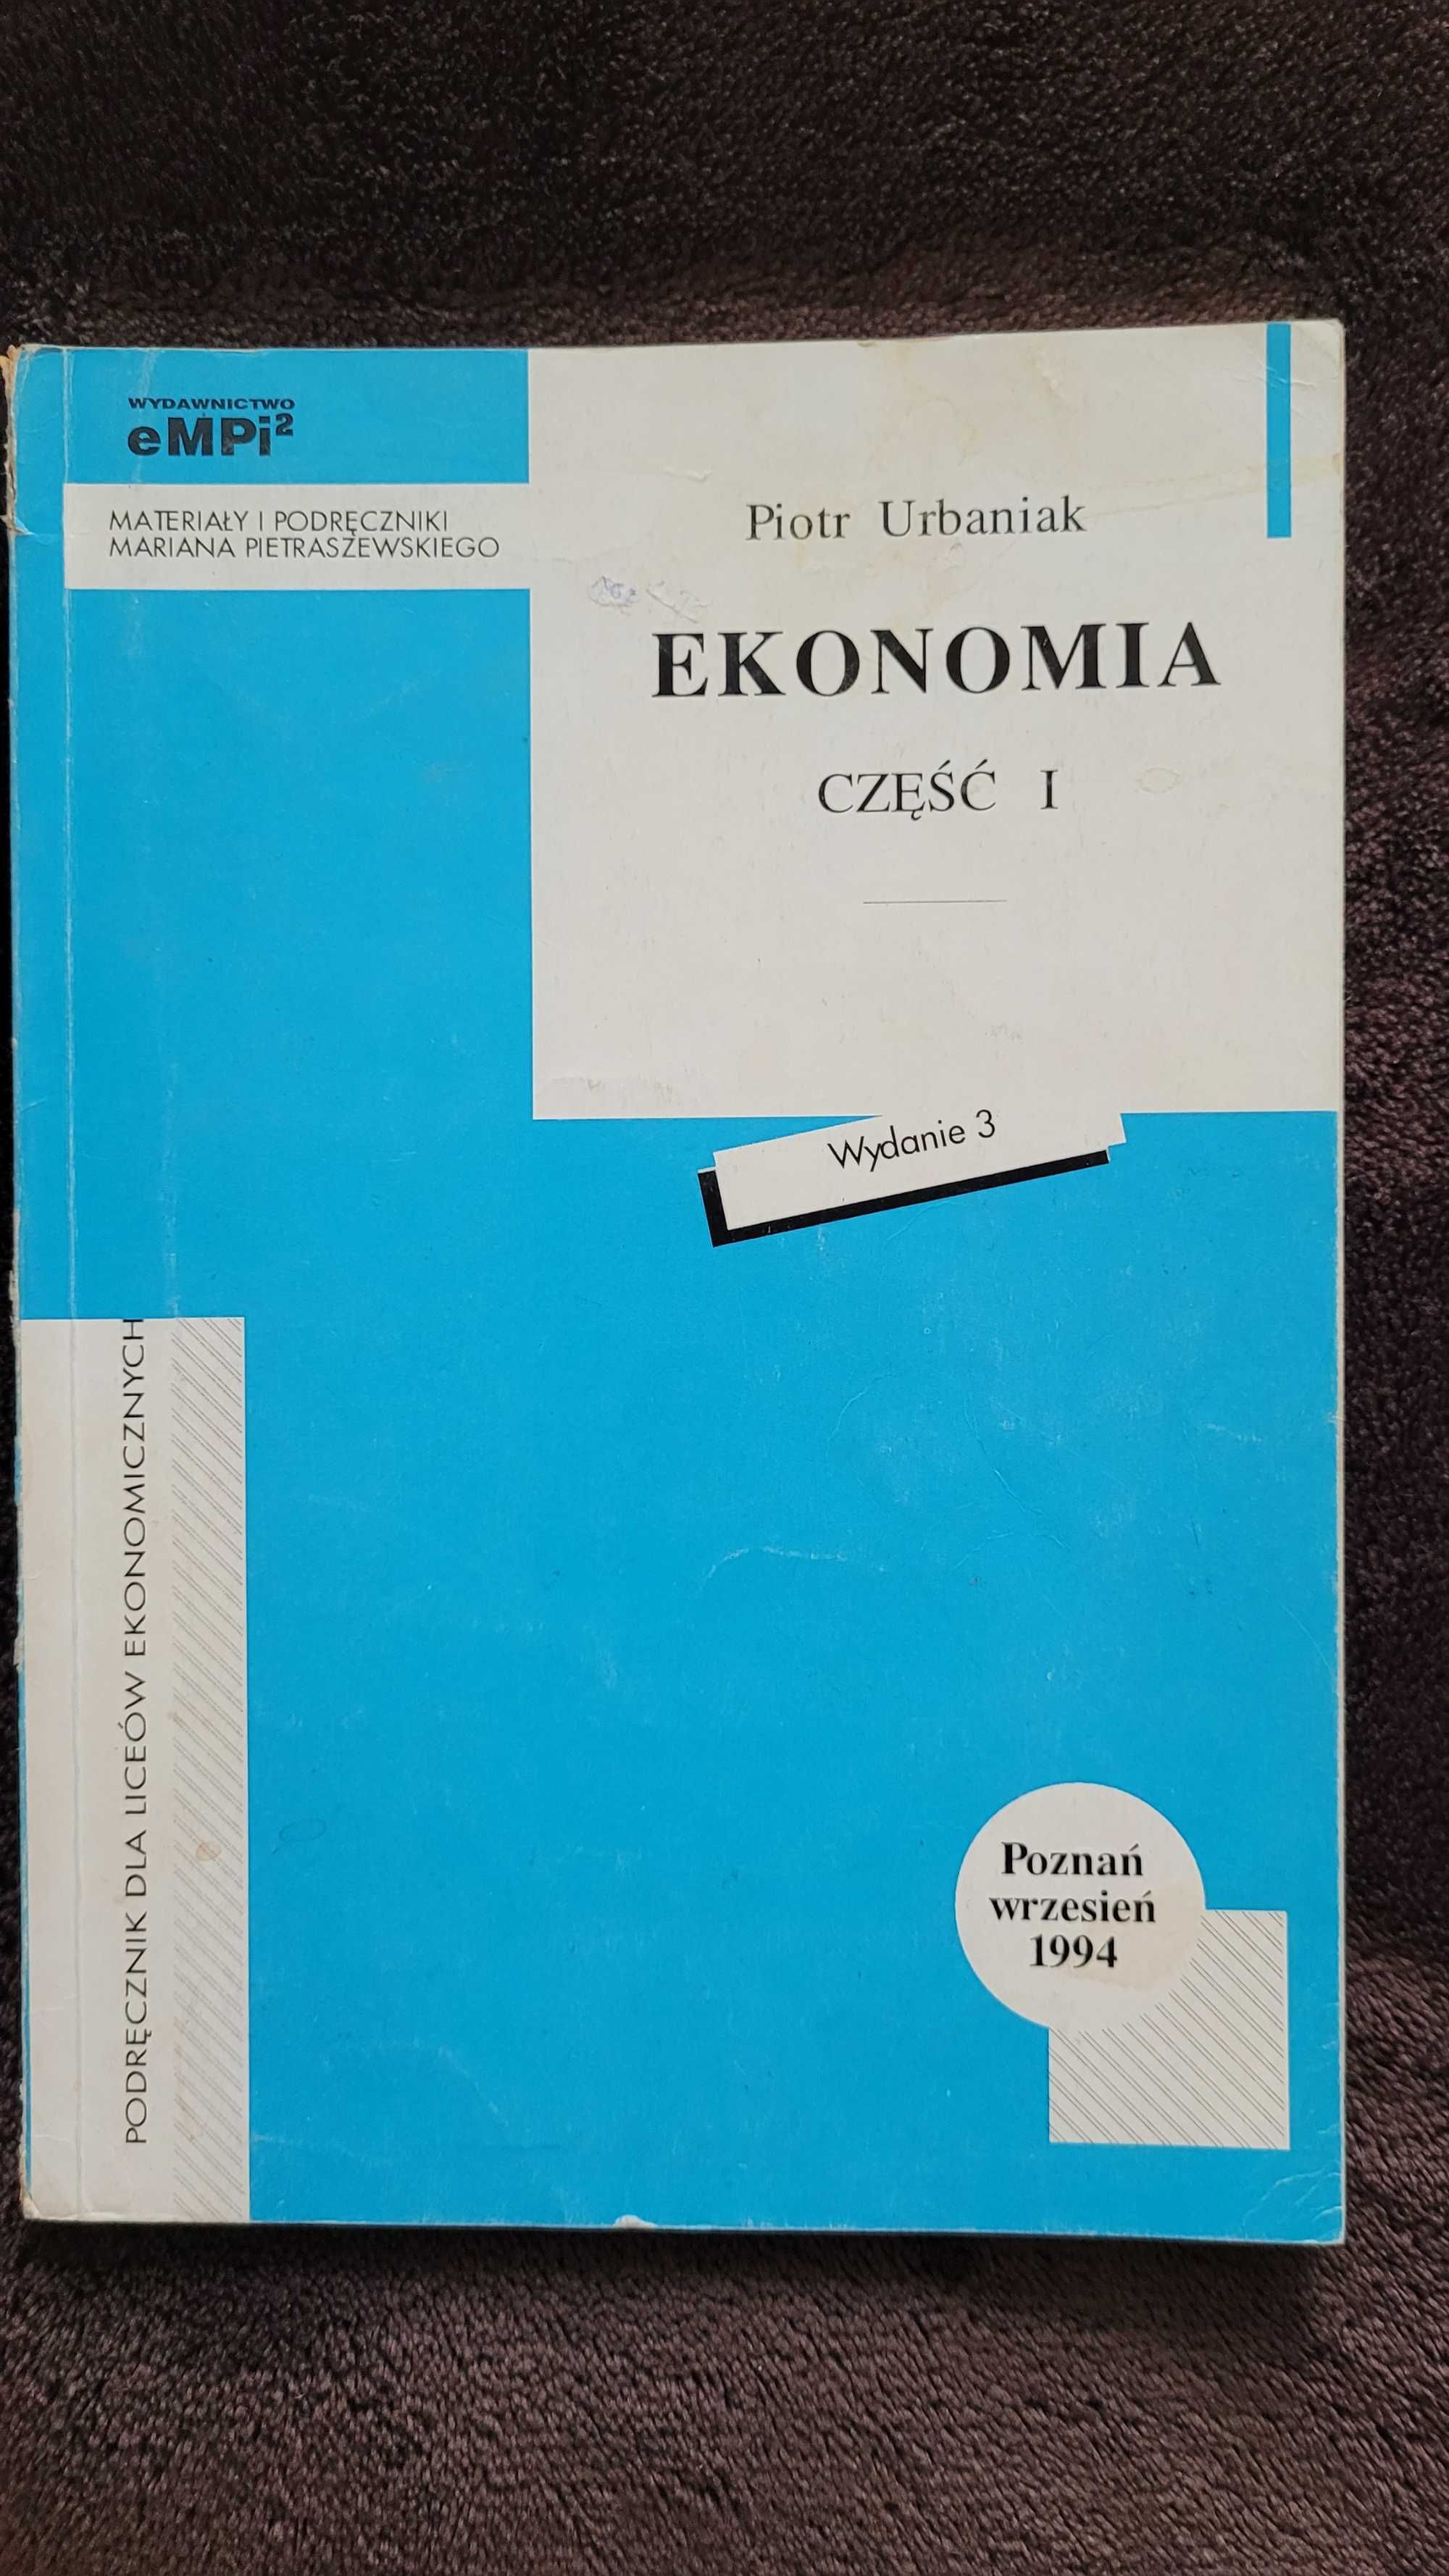 "Ekonomia. Część 1", Piotr Urbaniak